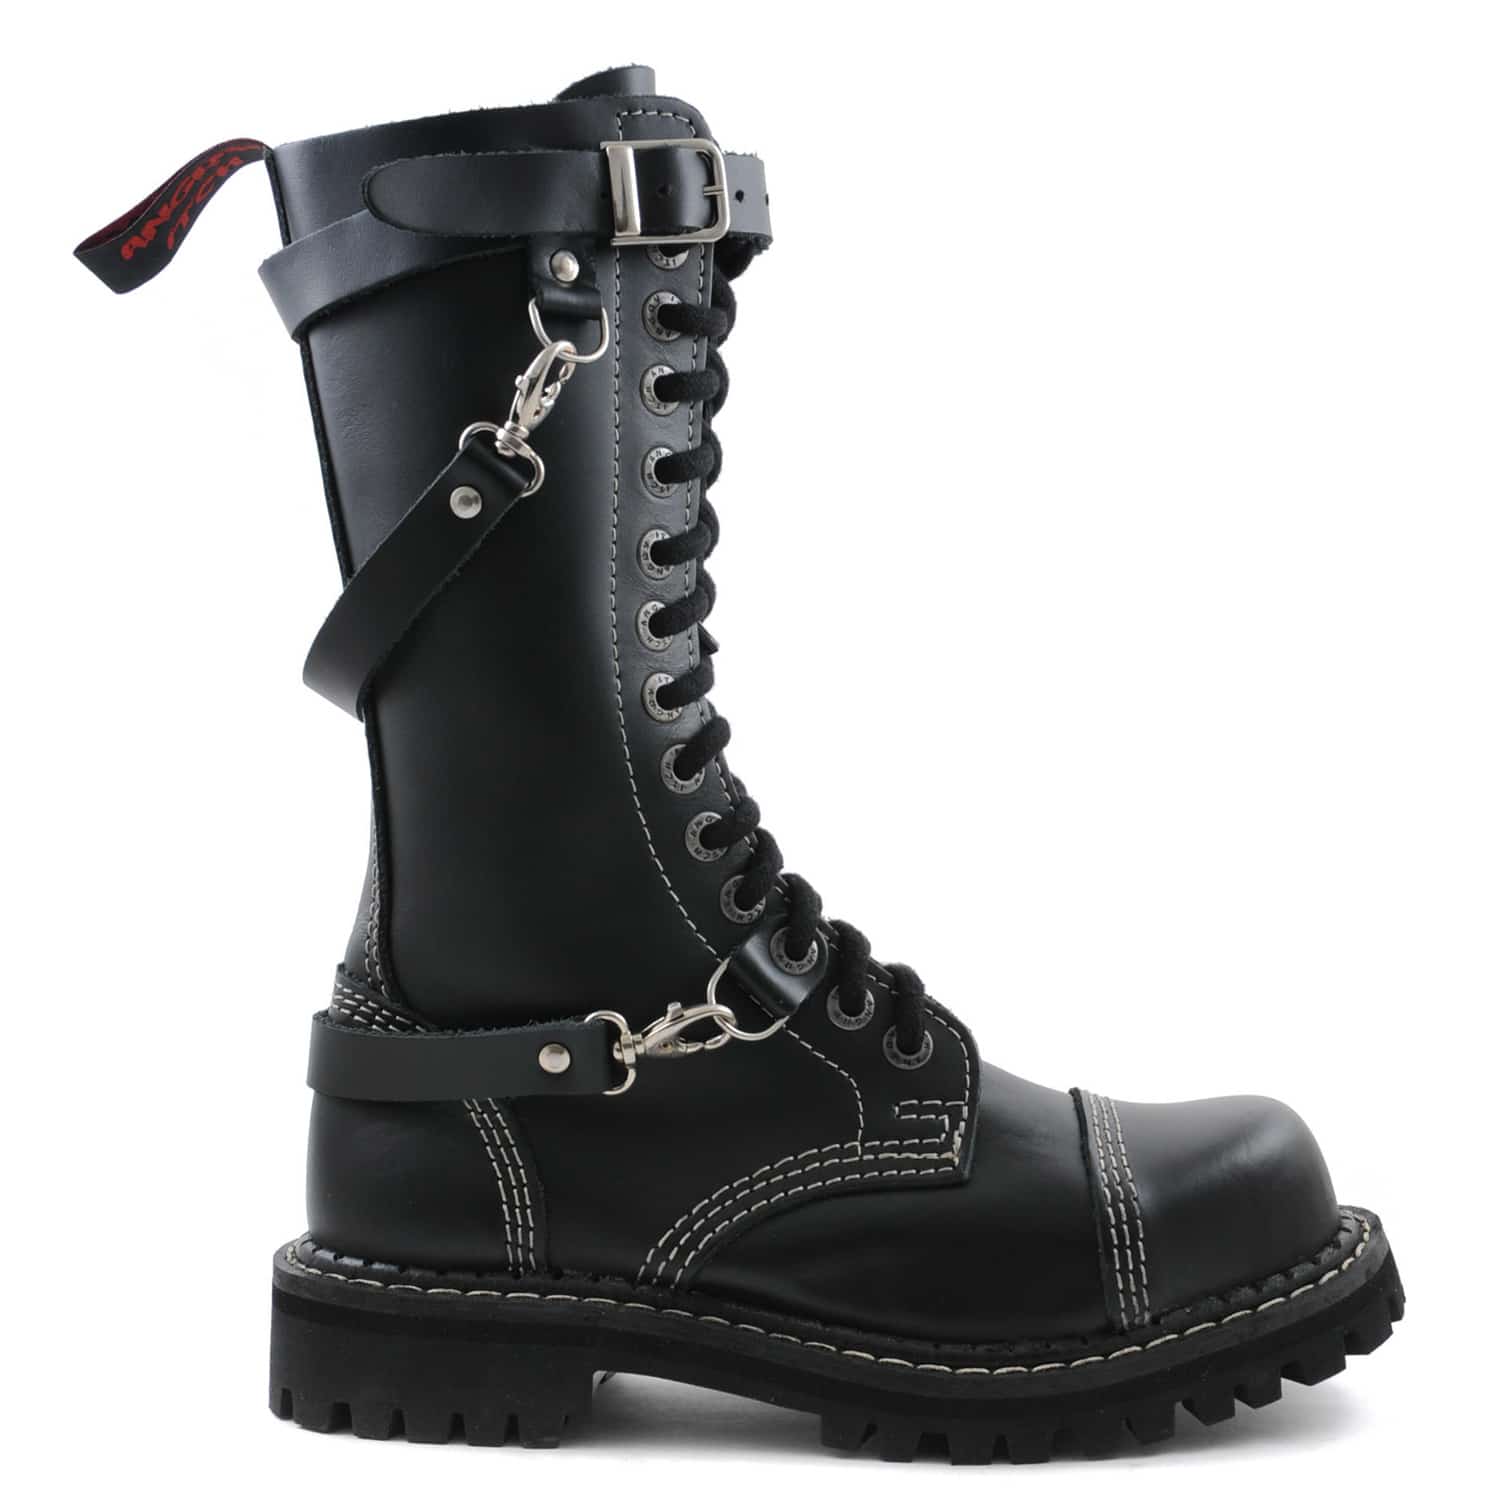 Seitenansicht: Schwarzer 14-Loch-Stiefel aus Leder mit drei Riemen um den Schuh